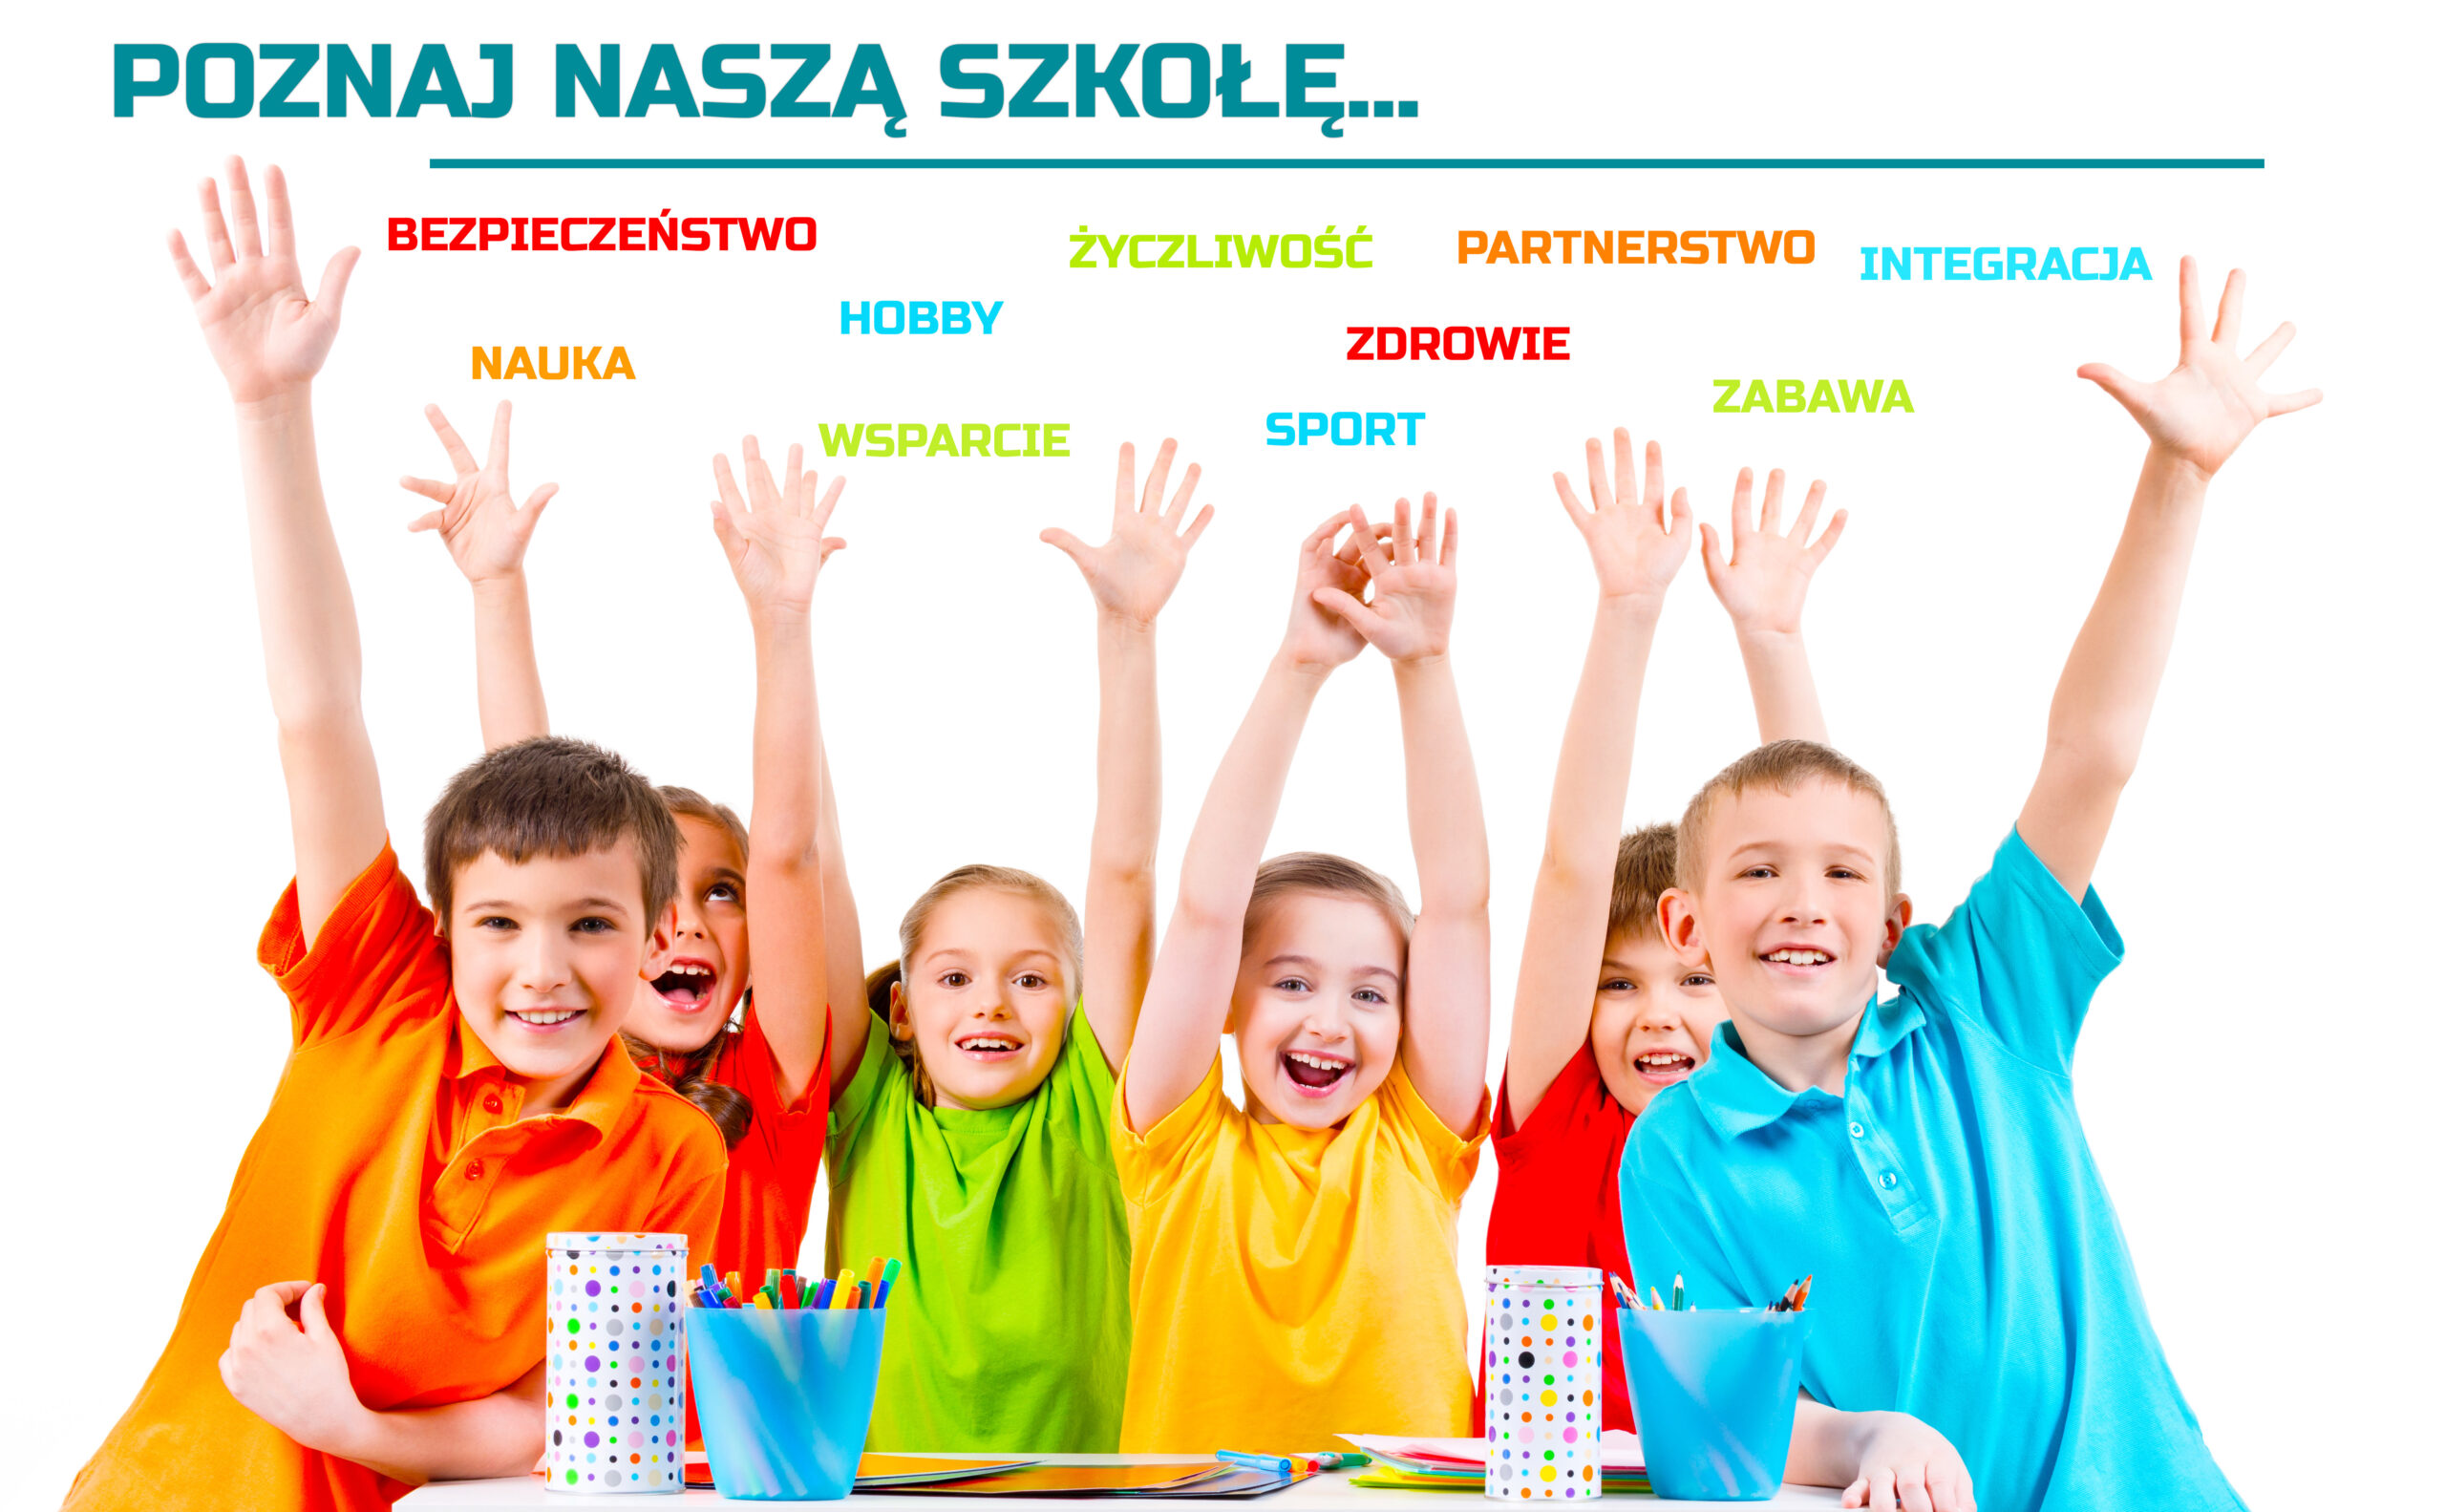 Grafika przedstawia grupę cieszących się dzieci, trzymających dłonie w górze. Kolorowe koszulki. Białe tło zdjęcia. U góry grafiki widzimy napis POZNAJ NASZĄ SZKOŁĘ oraz hasła związane ze szkołą.